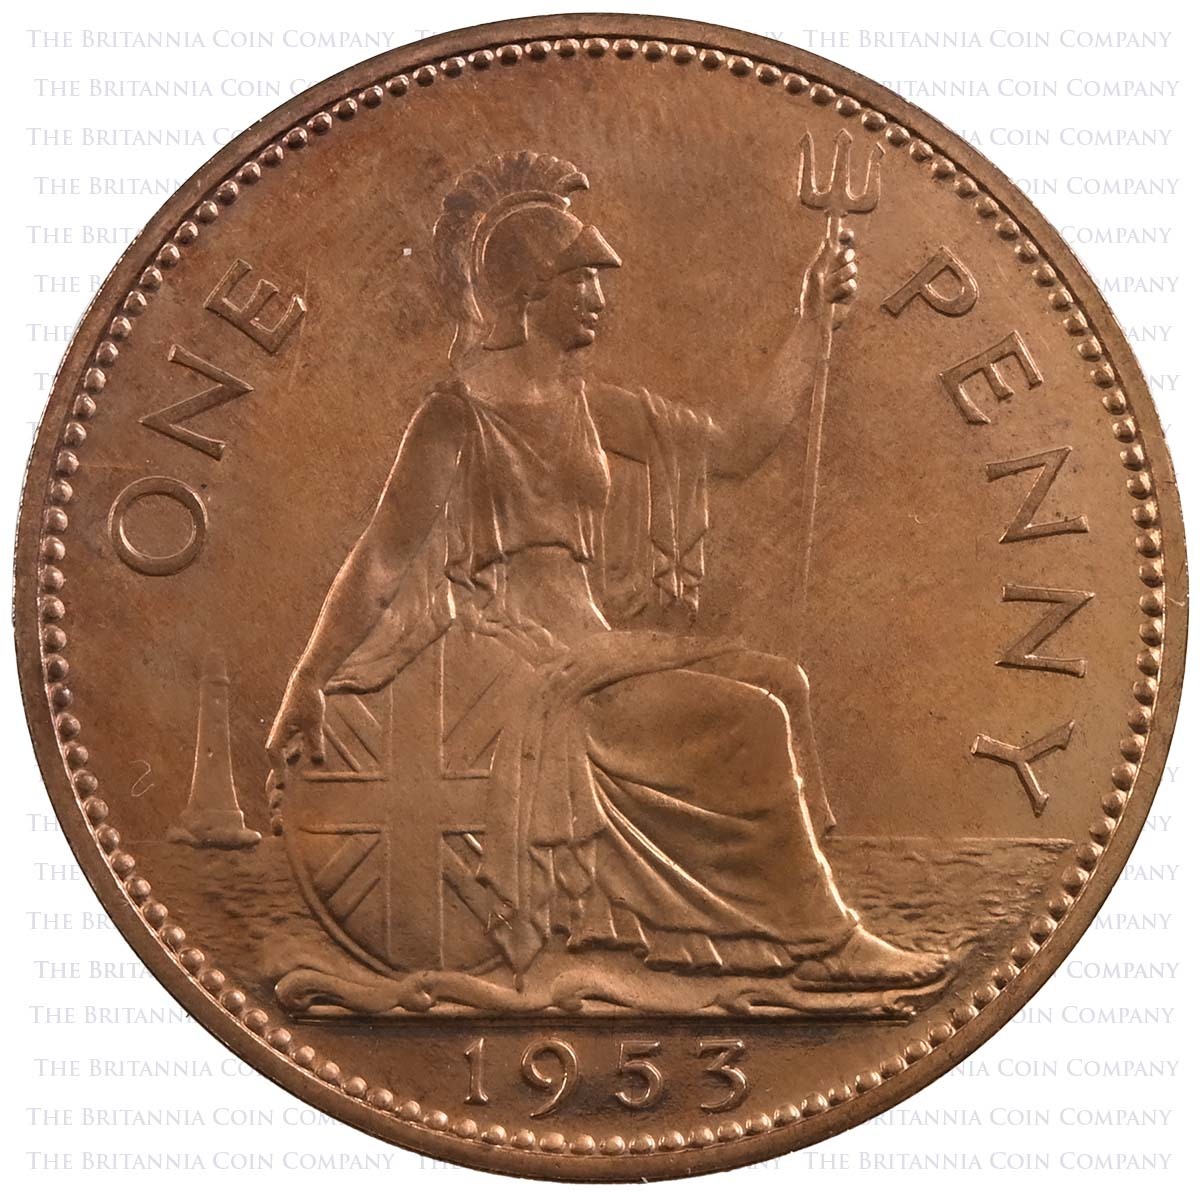 1953 Elizabeth II Coronation Proof Specimen Set Penny Reverse